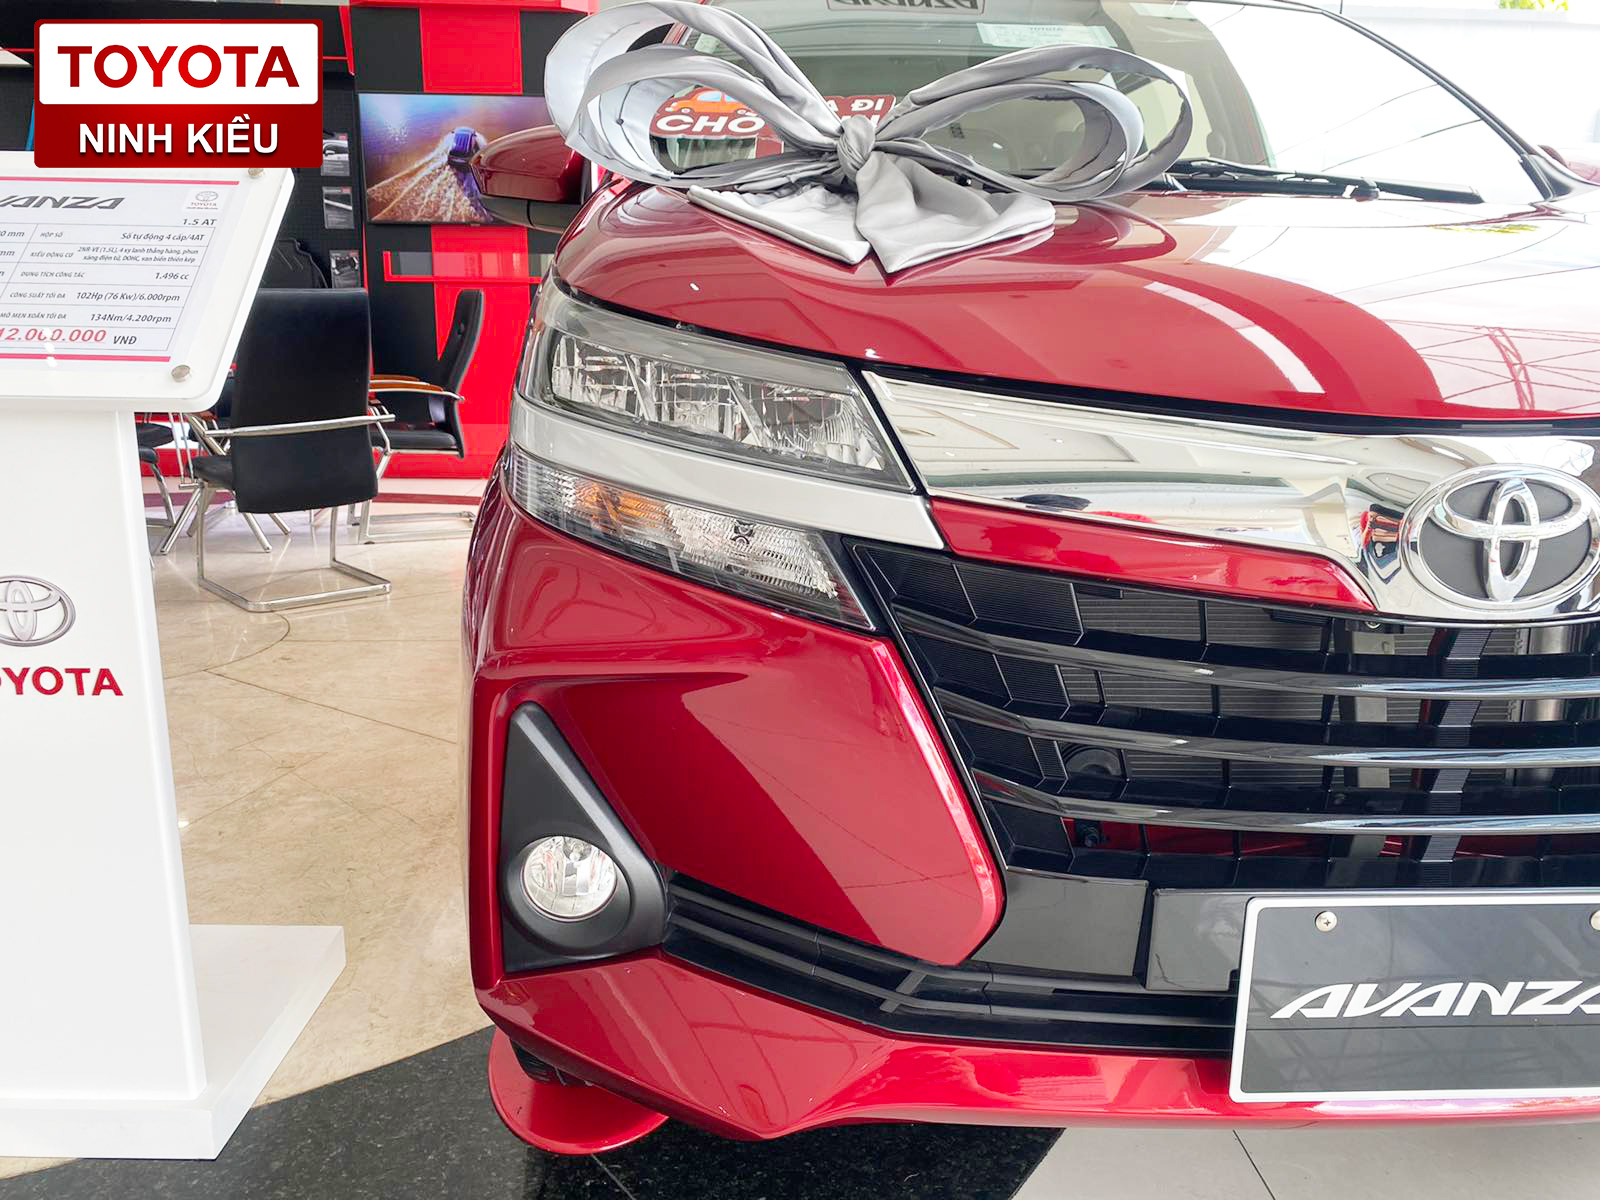 Toyota Avanza Đỏ 2020 Nâng Cấp Đặc Biệt Tại Toyota Ninh Kiều